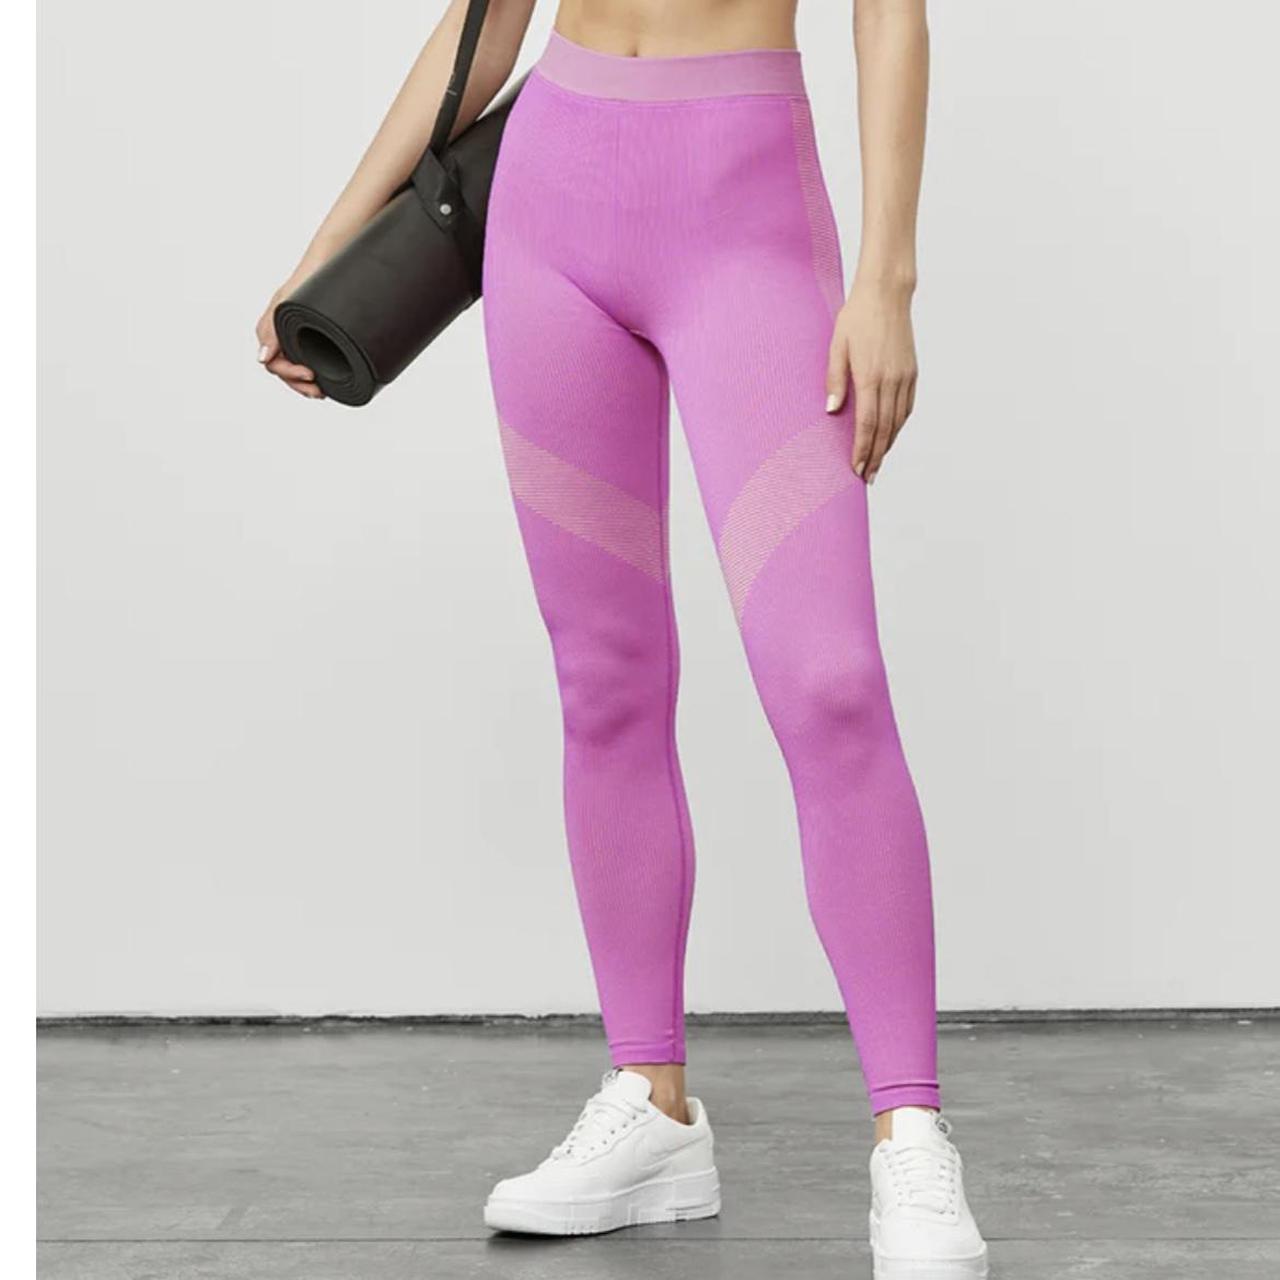 Alo Yoga Women's Pink Pants on Sale